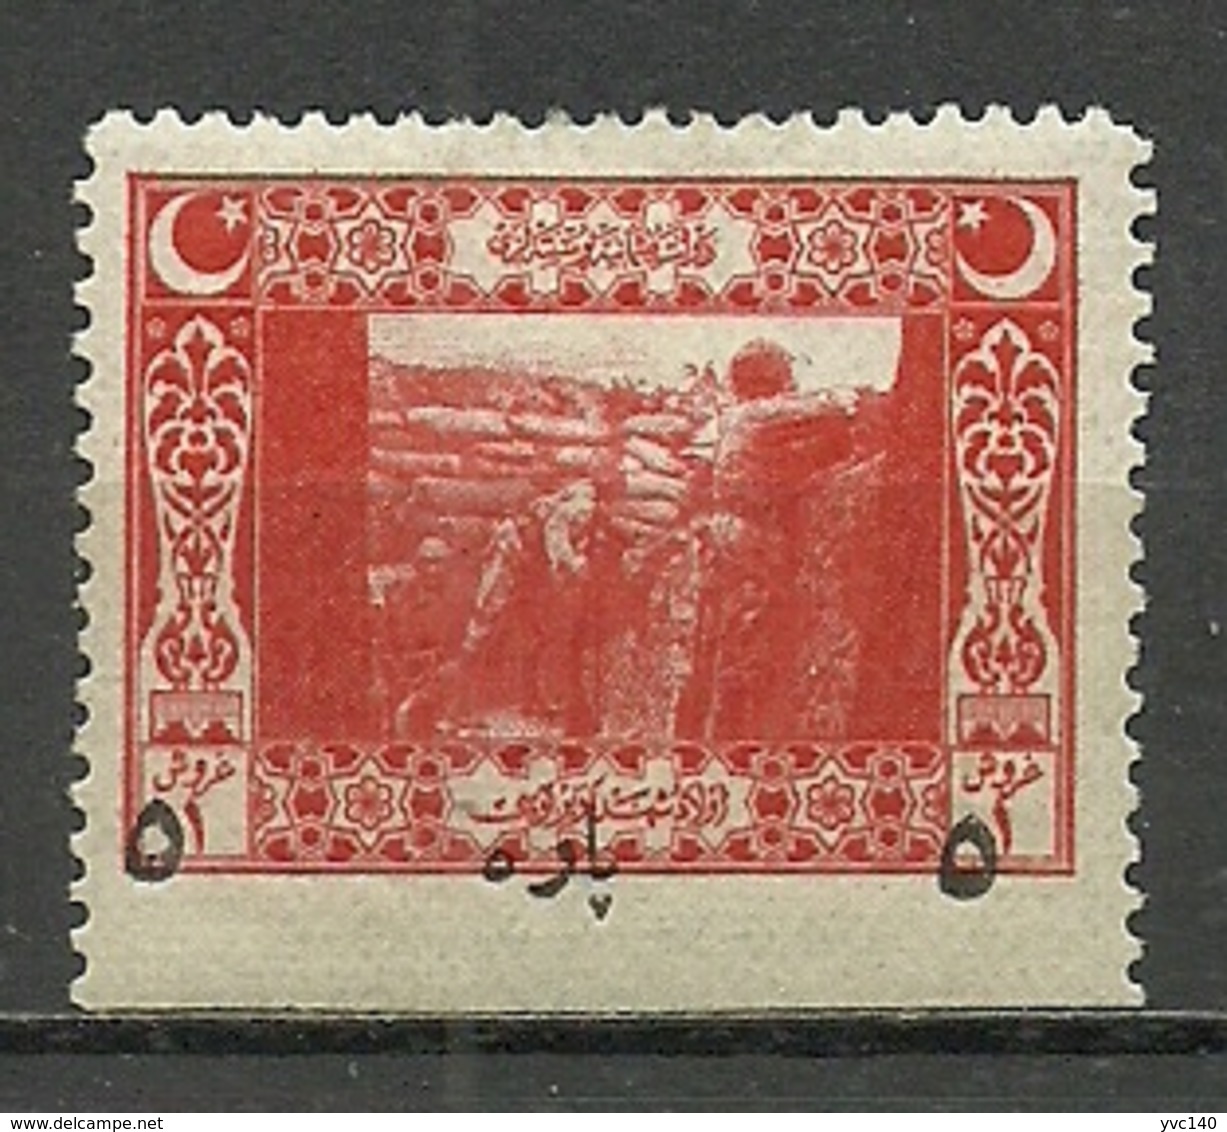 Turkey; 1917 Surcharged Postage Stamp ERROR "Imperf. Margin" - Ongebruikt